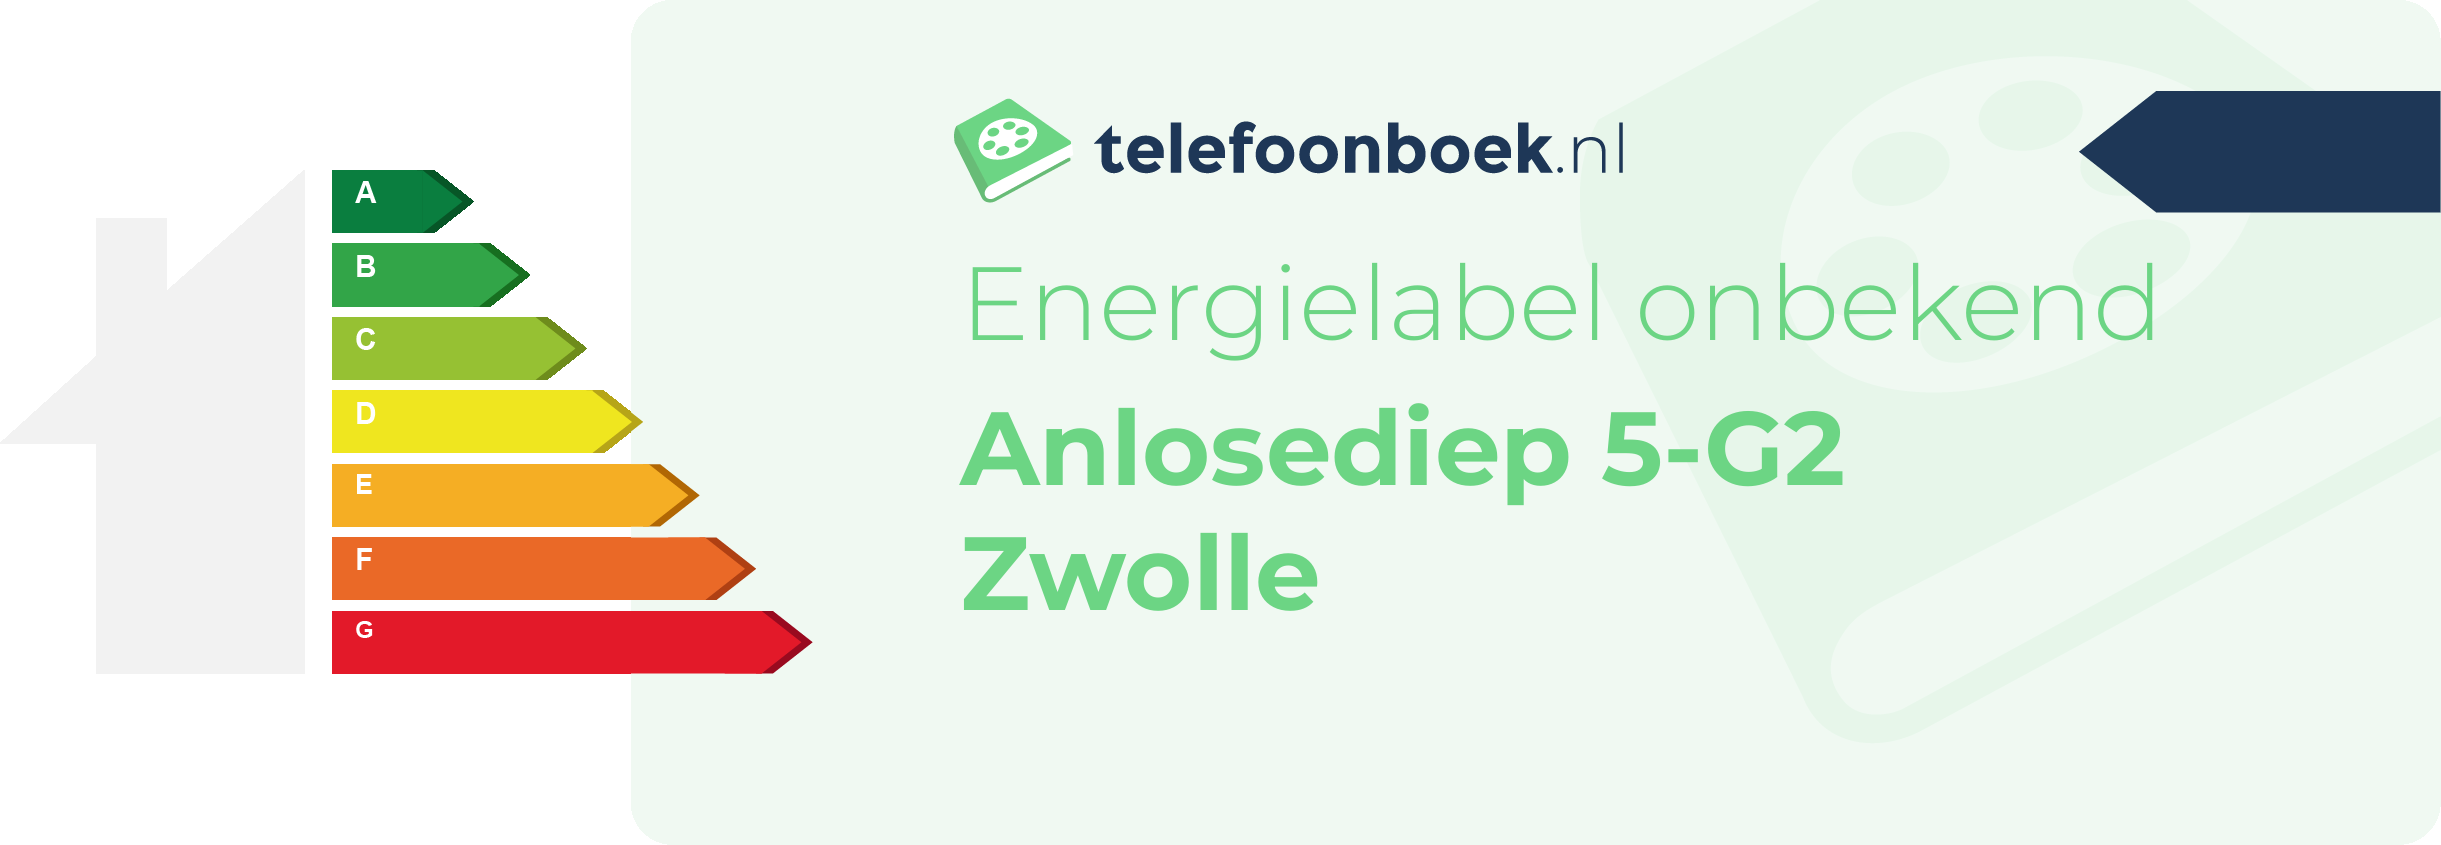 Energielabel Anlosediep 5-G2 Zwolle